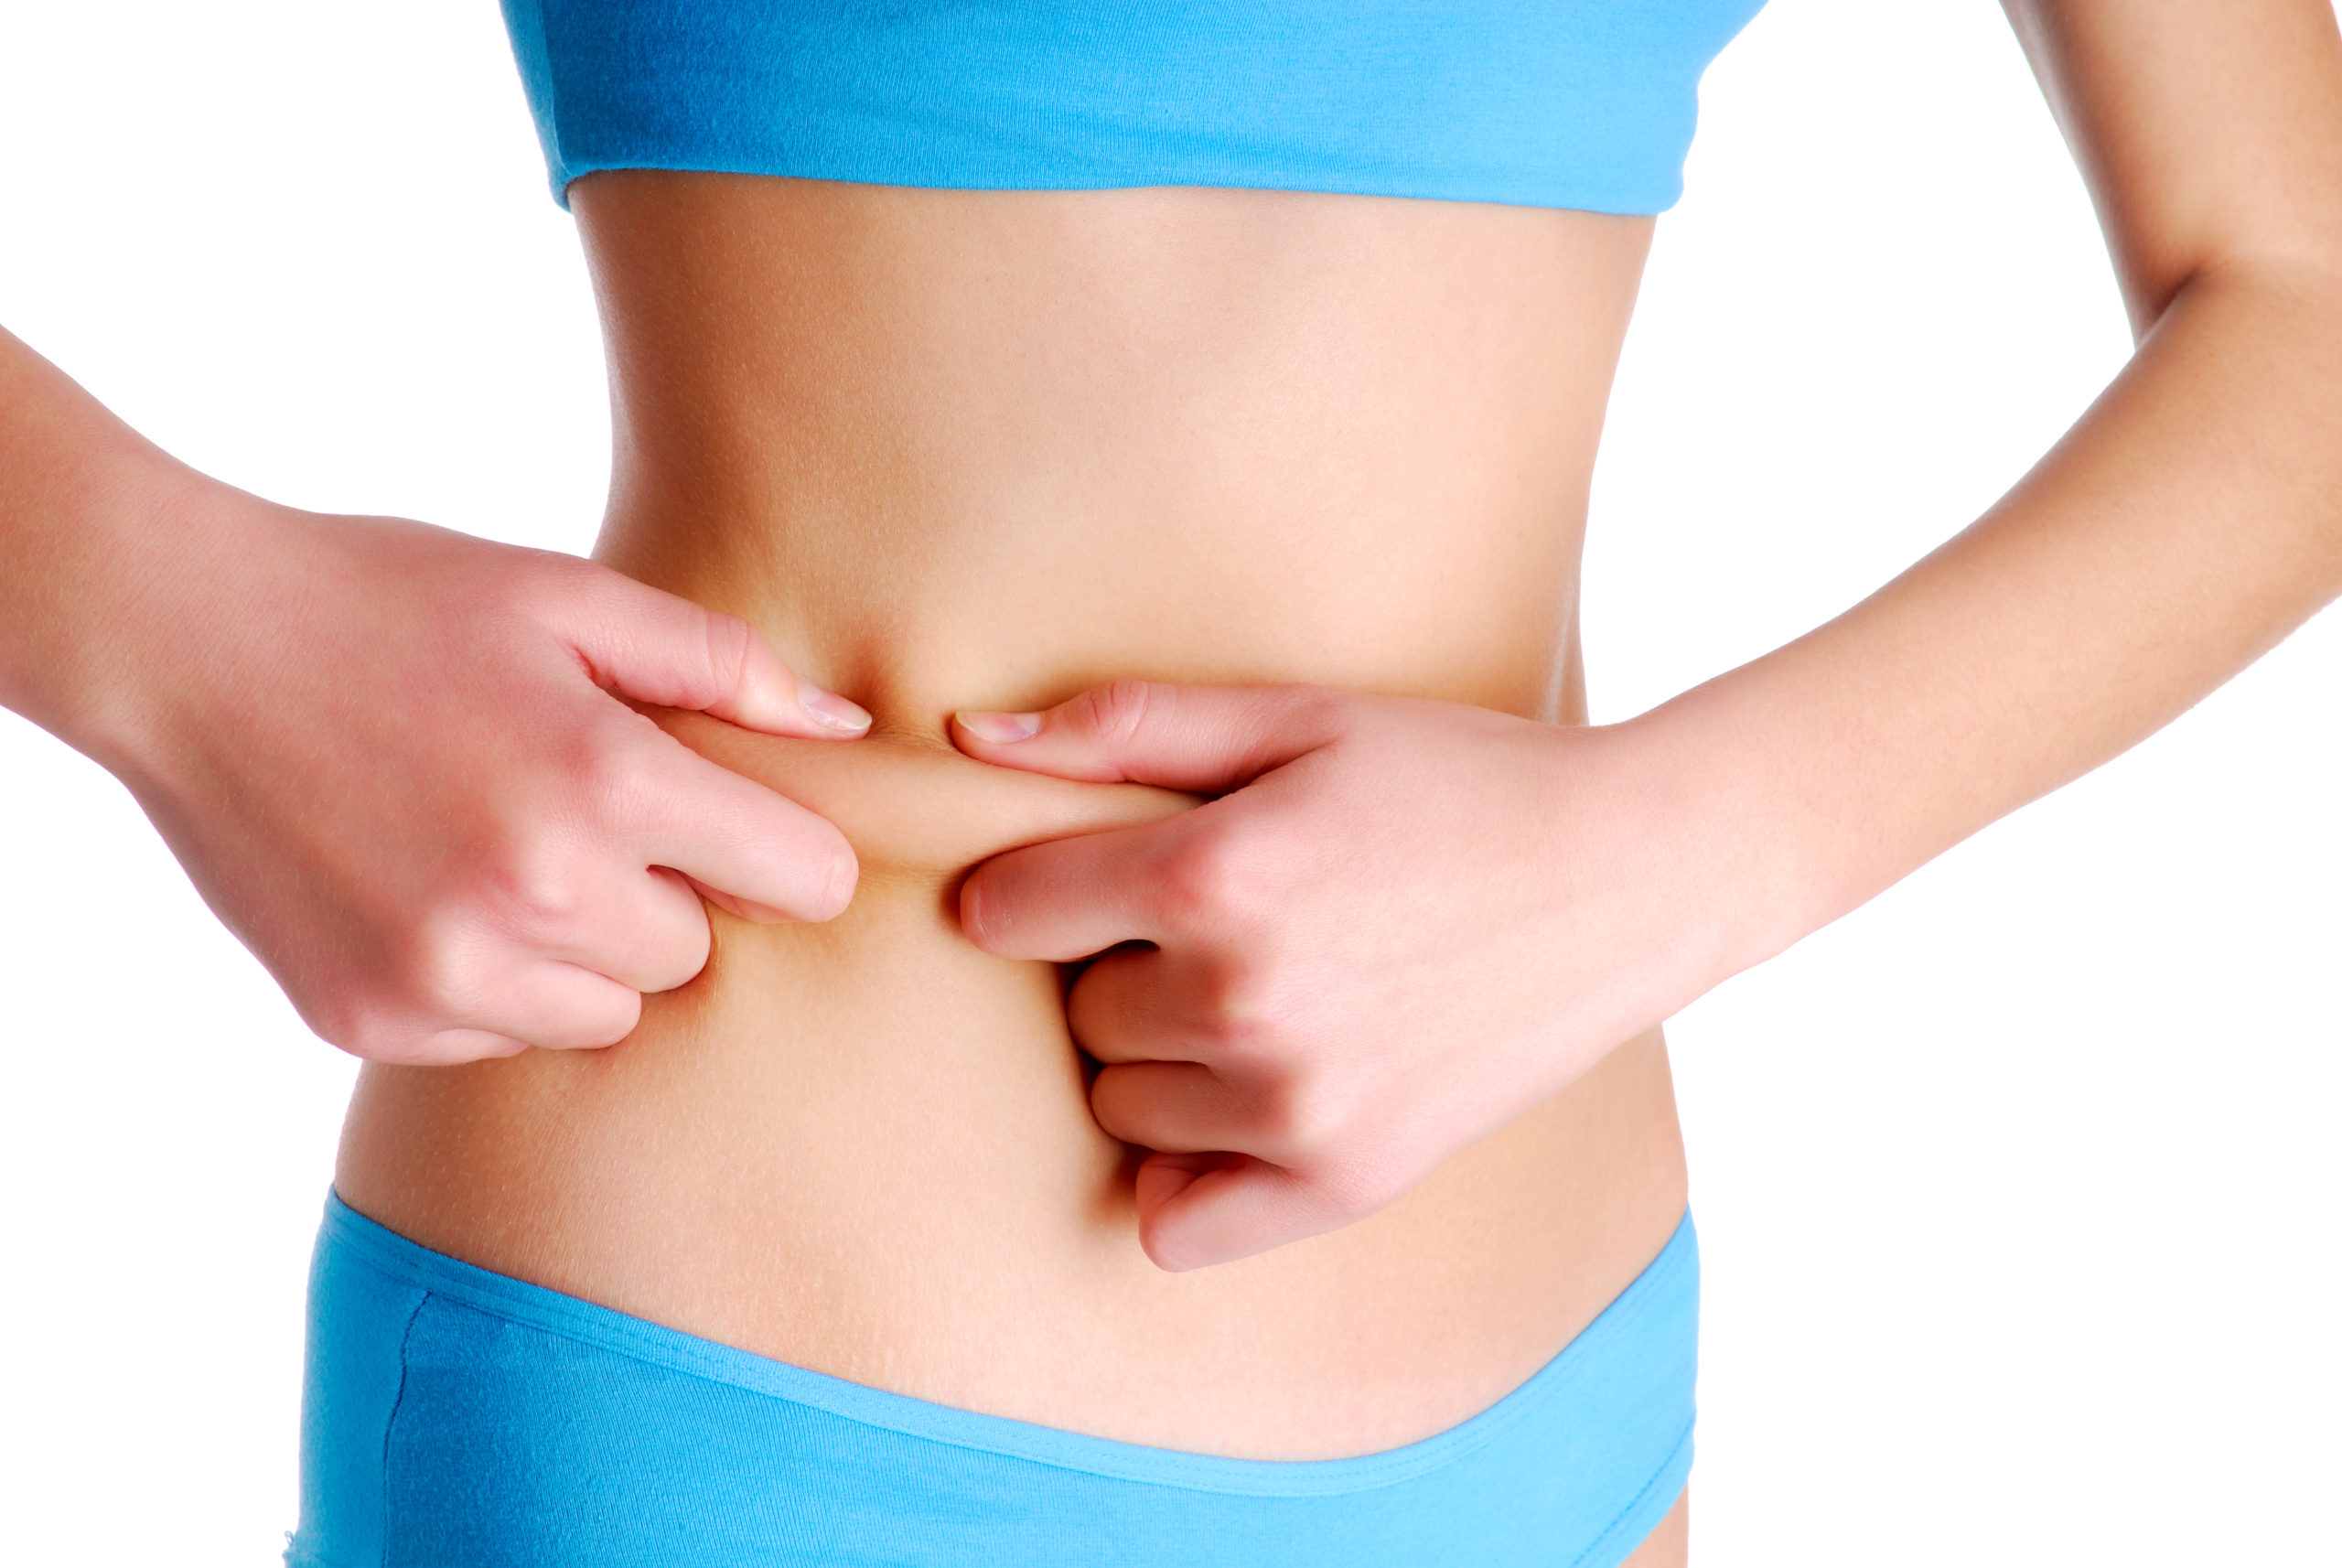 Dermolipectomia abdominal: que cirurgia é essa? - Blog Master Health